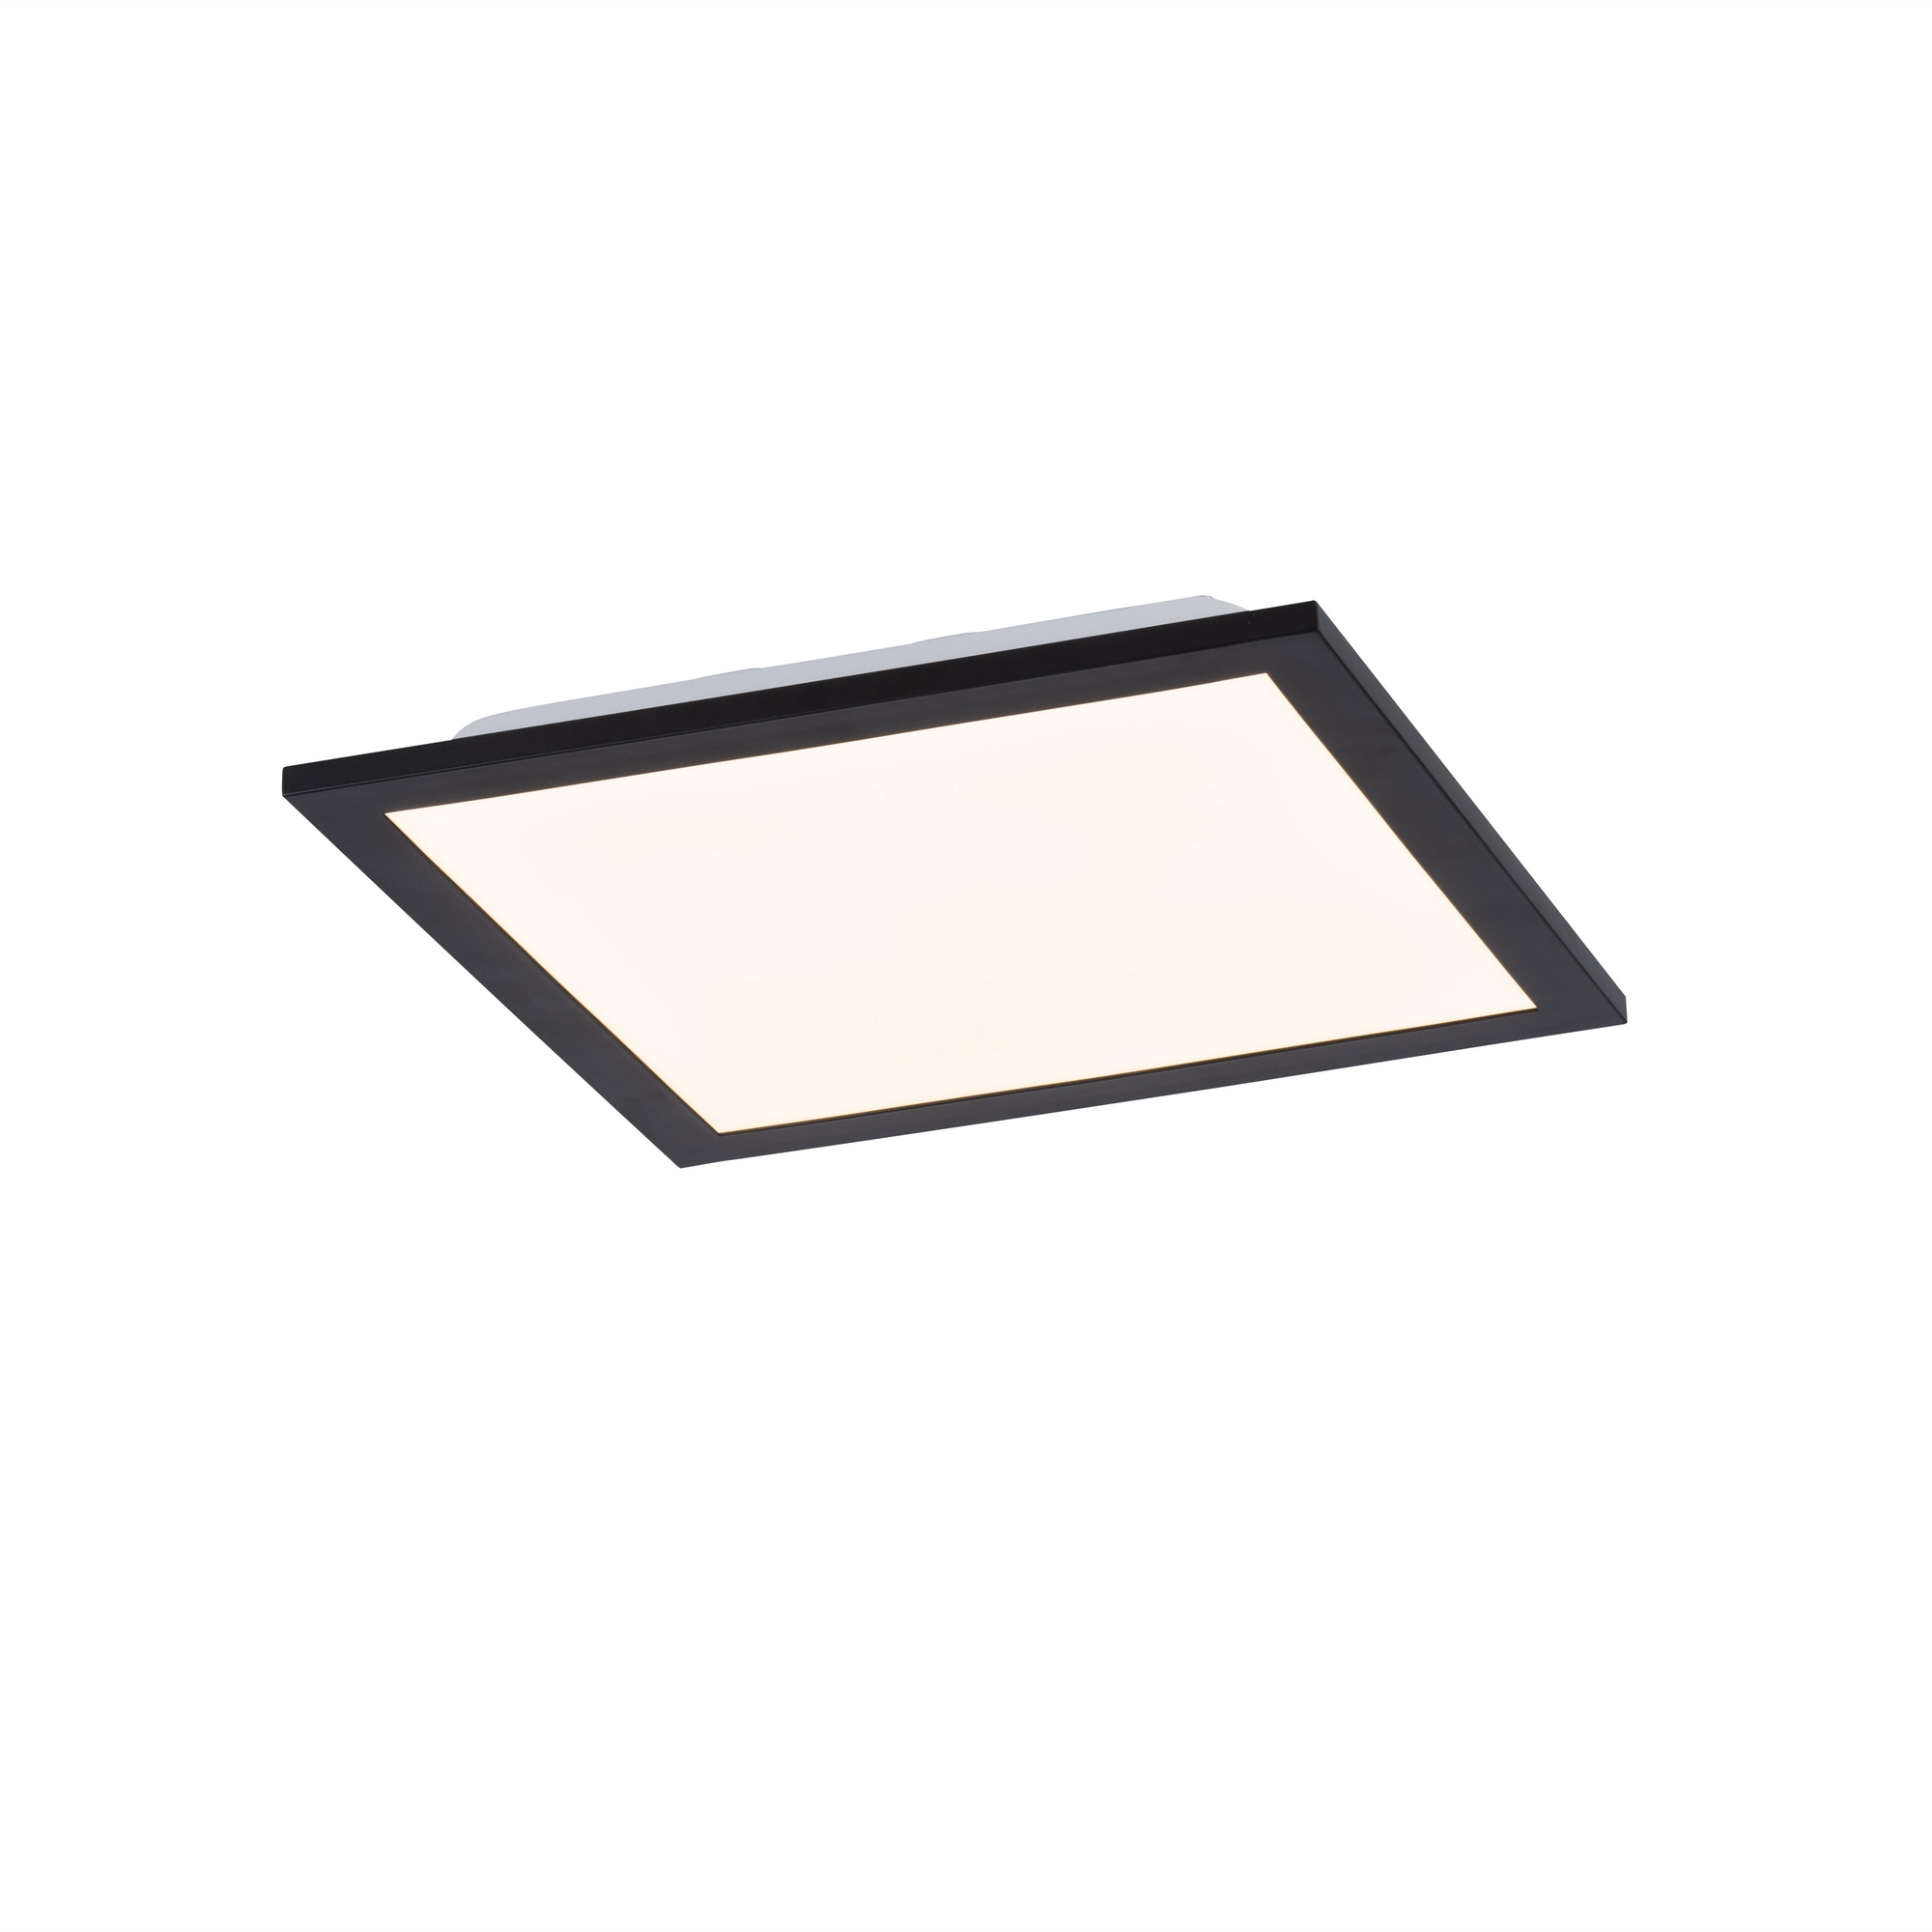 LED-Deckenleuchte 'Flat' schwarz 29,5 x 5,8 cm 485 lm + product picture